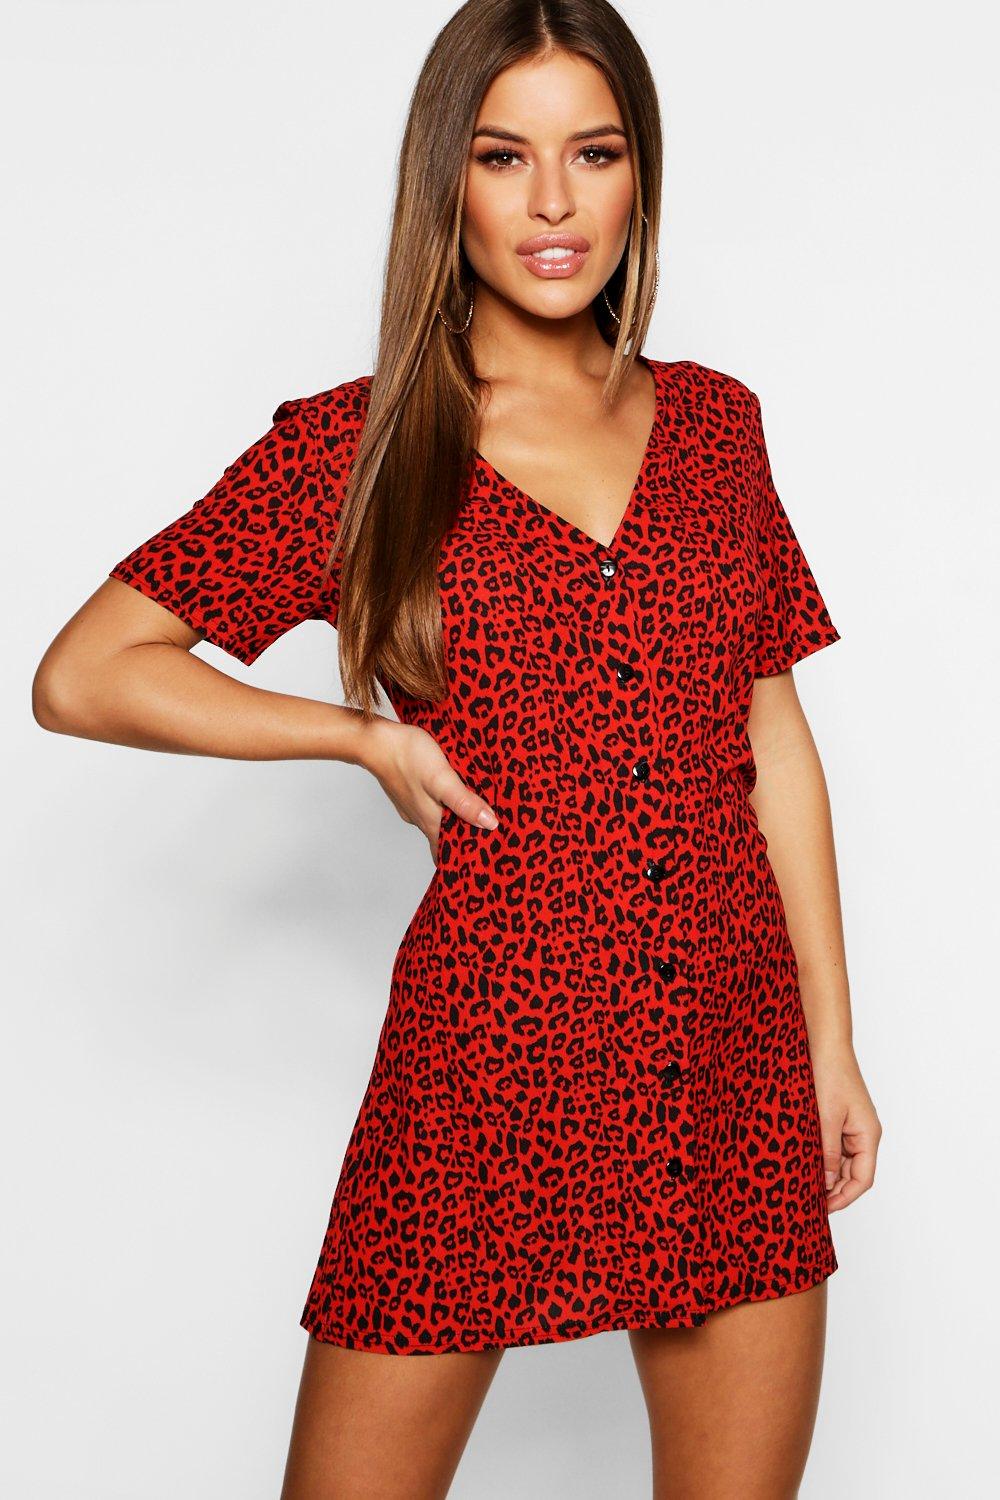 boohoo red leopard print dress